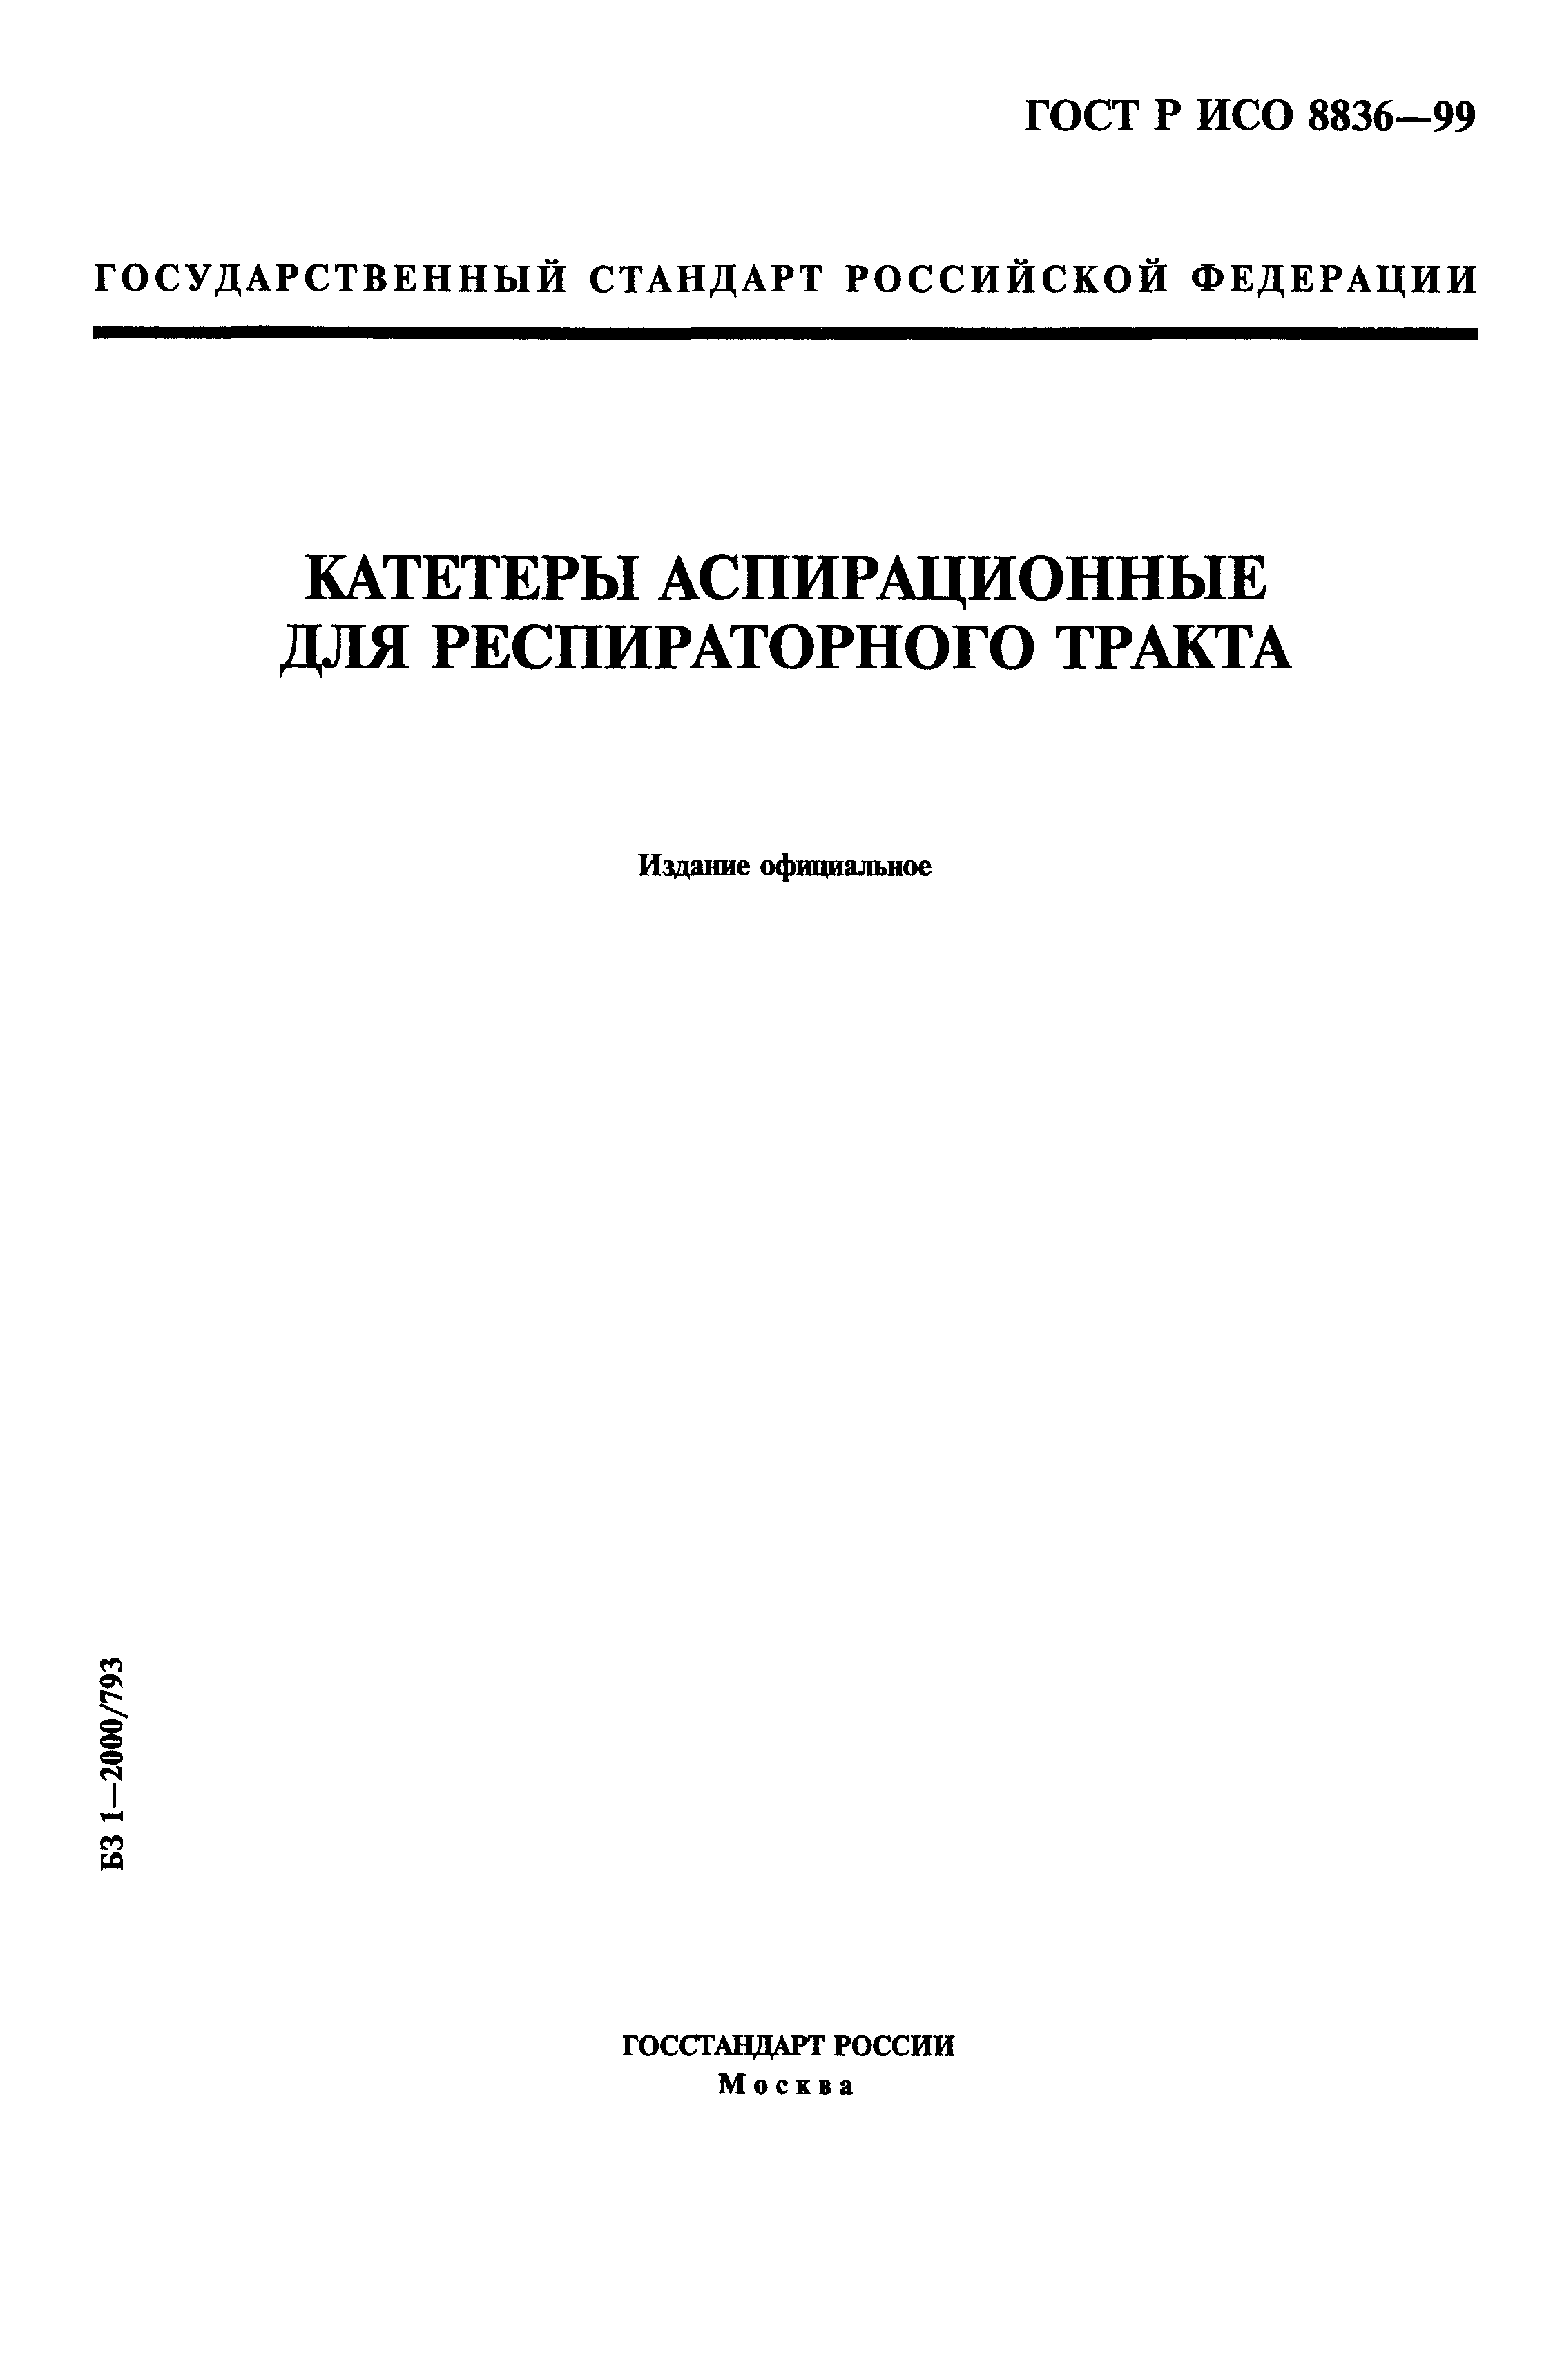 ГОСТ Р ИСО 8836-99